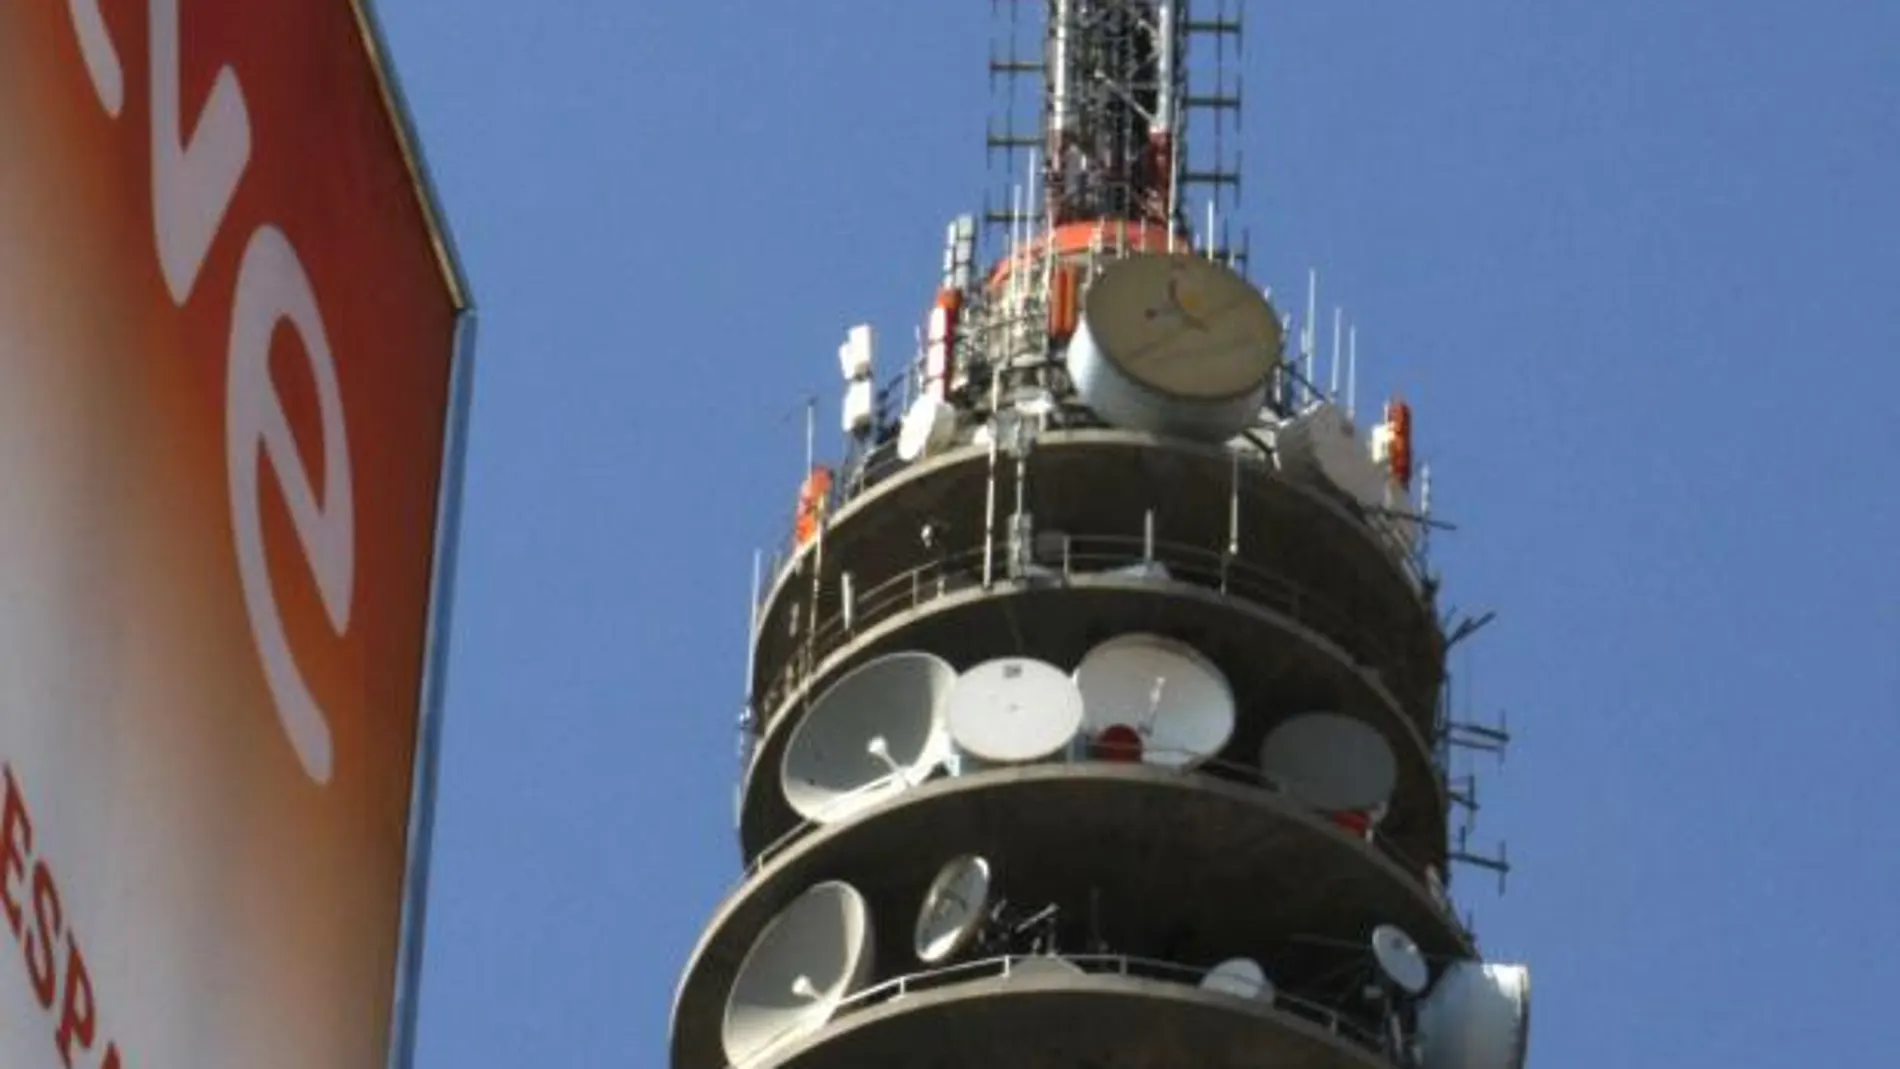 Imagen de la emblemática torre del centro de comunicaciones de RTVE, enseña de la pública